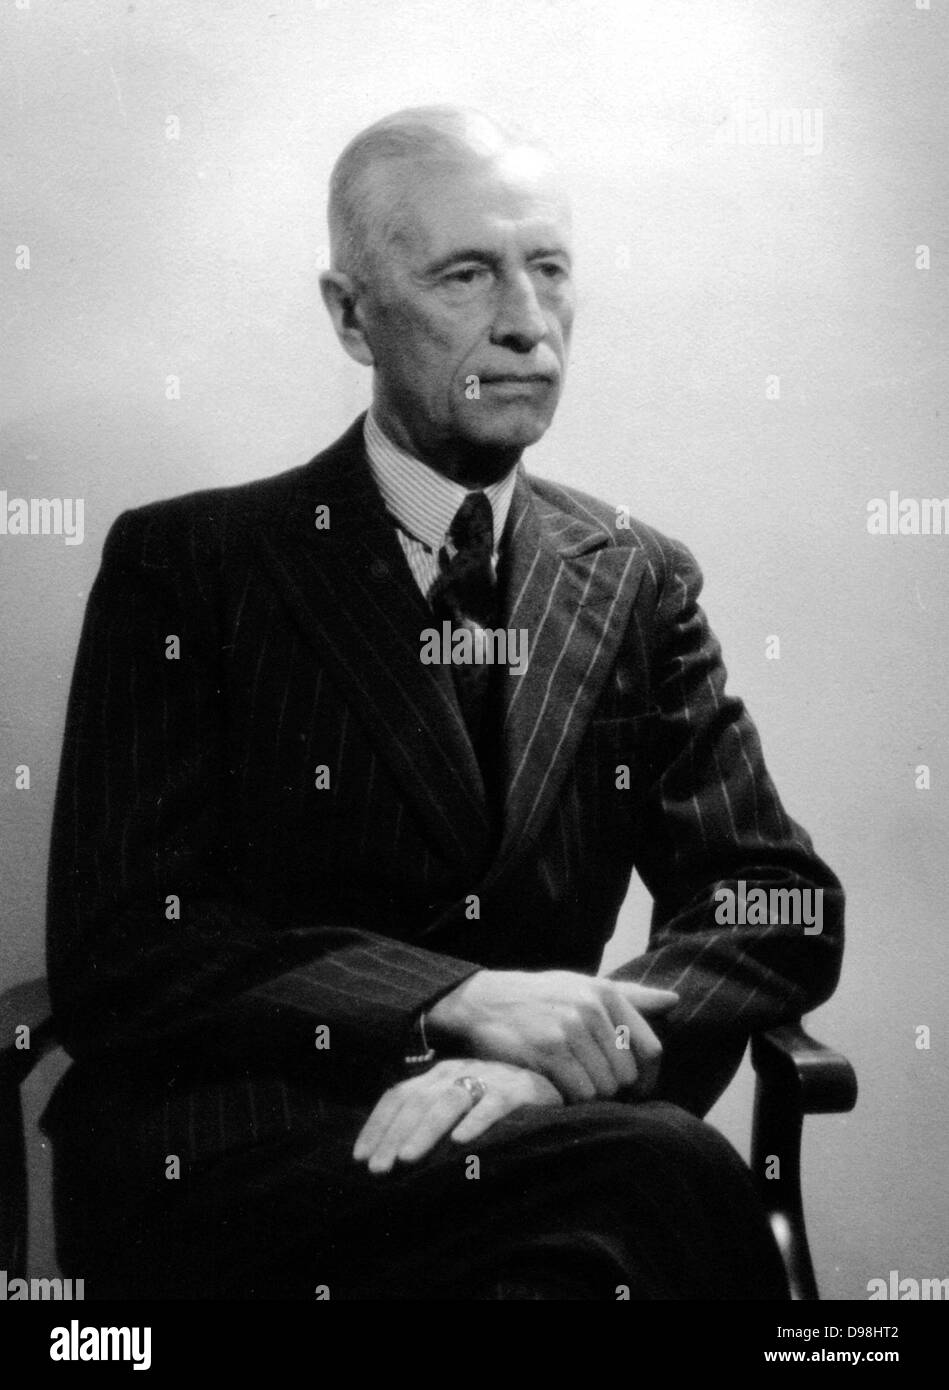 W?adys?aw Raczkiewicz 1885 - 1947 polnische Politiker. Präsident der Polnischen Exilregierung von 1939 bis zu seinem Tod im Jahr 1947. Stockfoto